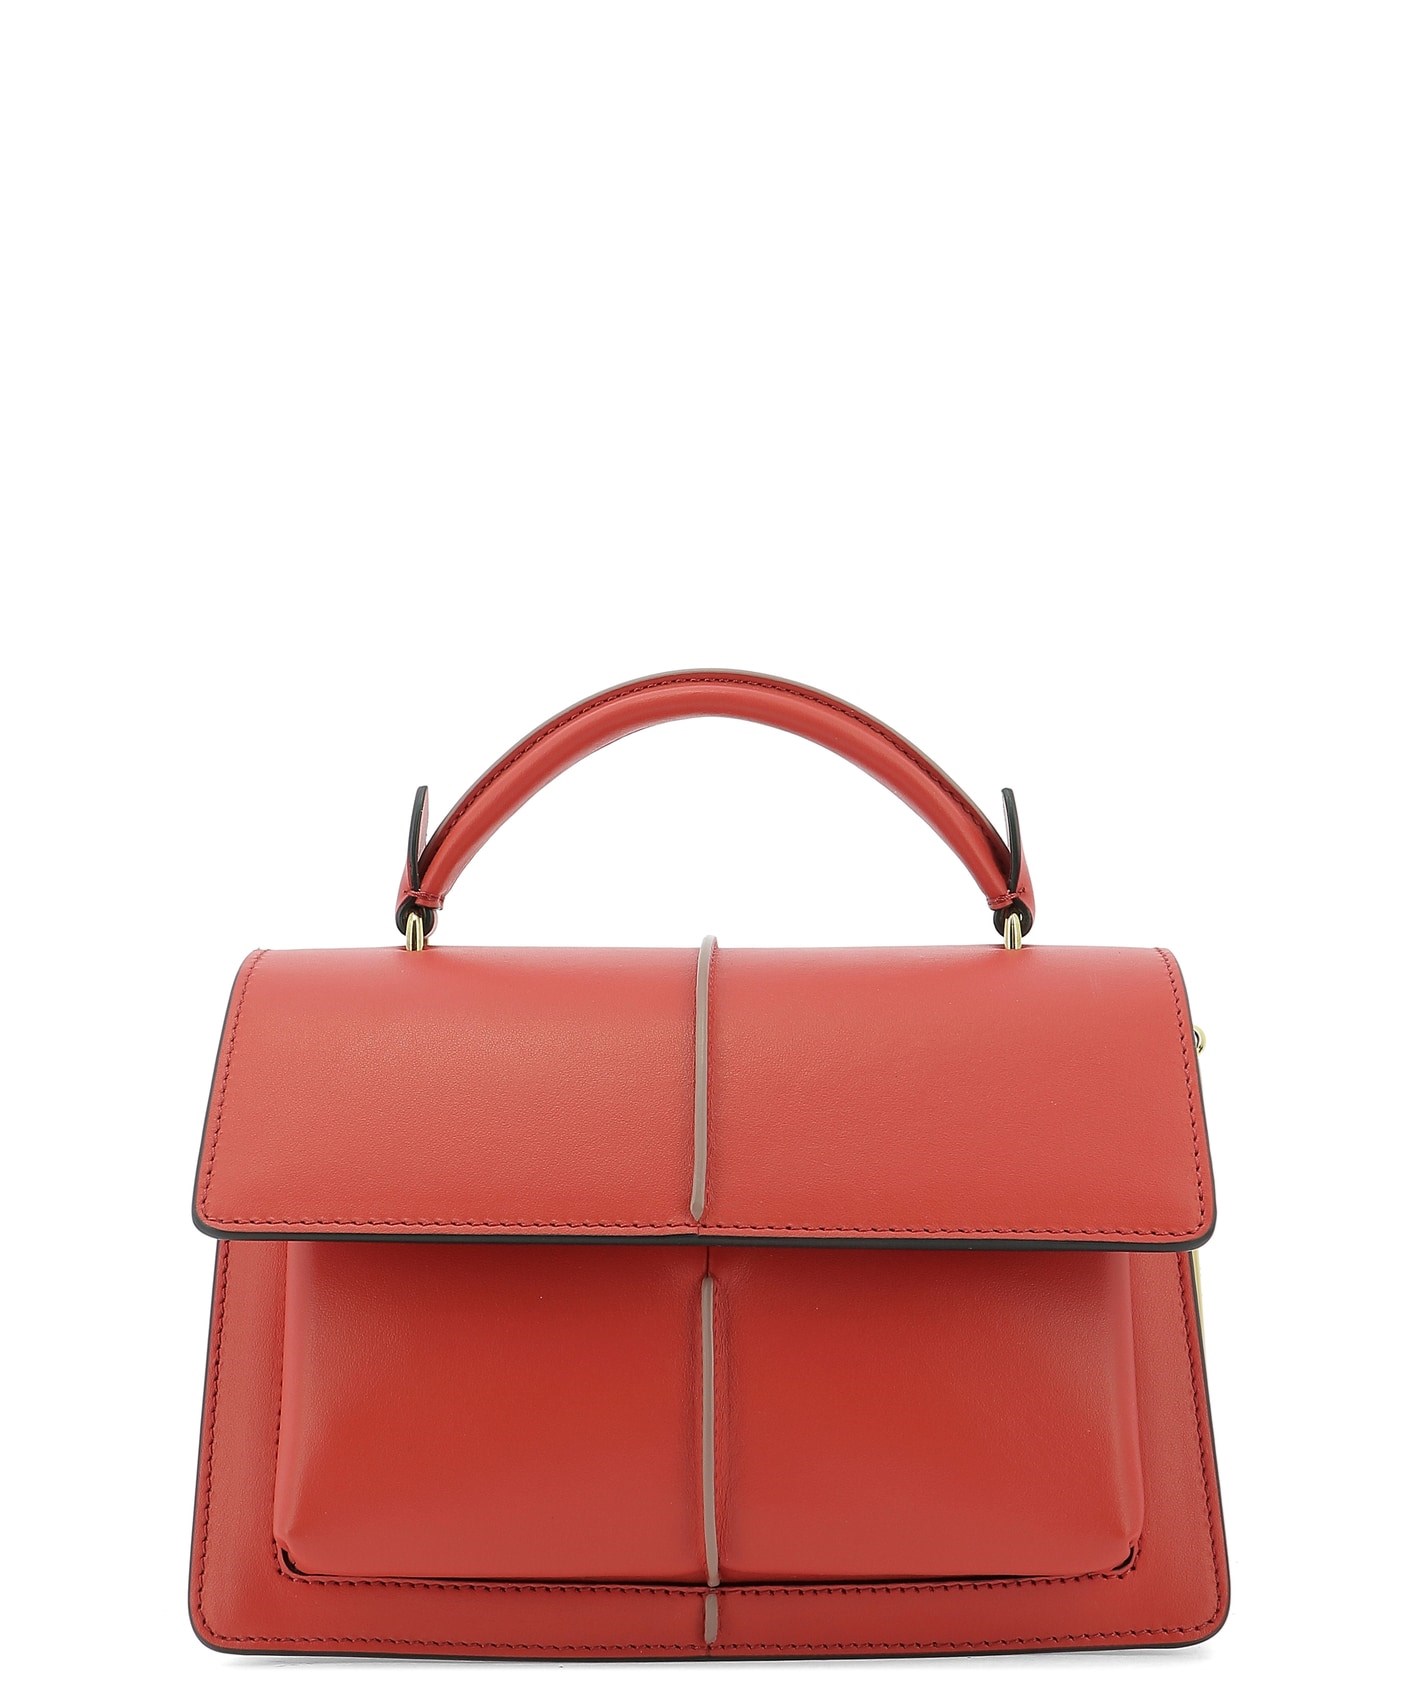 【MARNI】Leather handbag